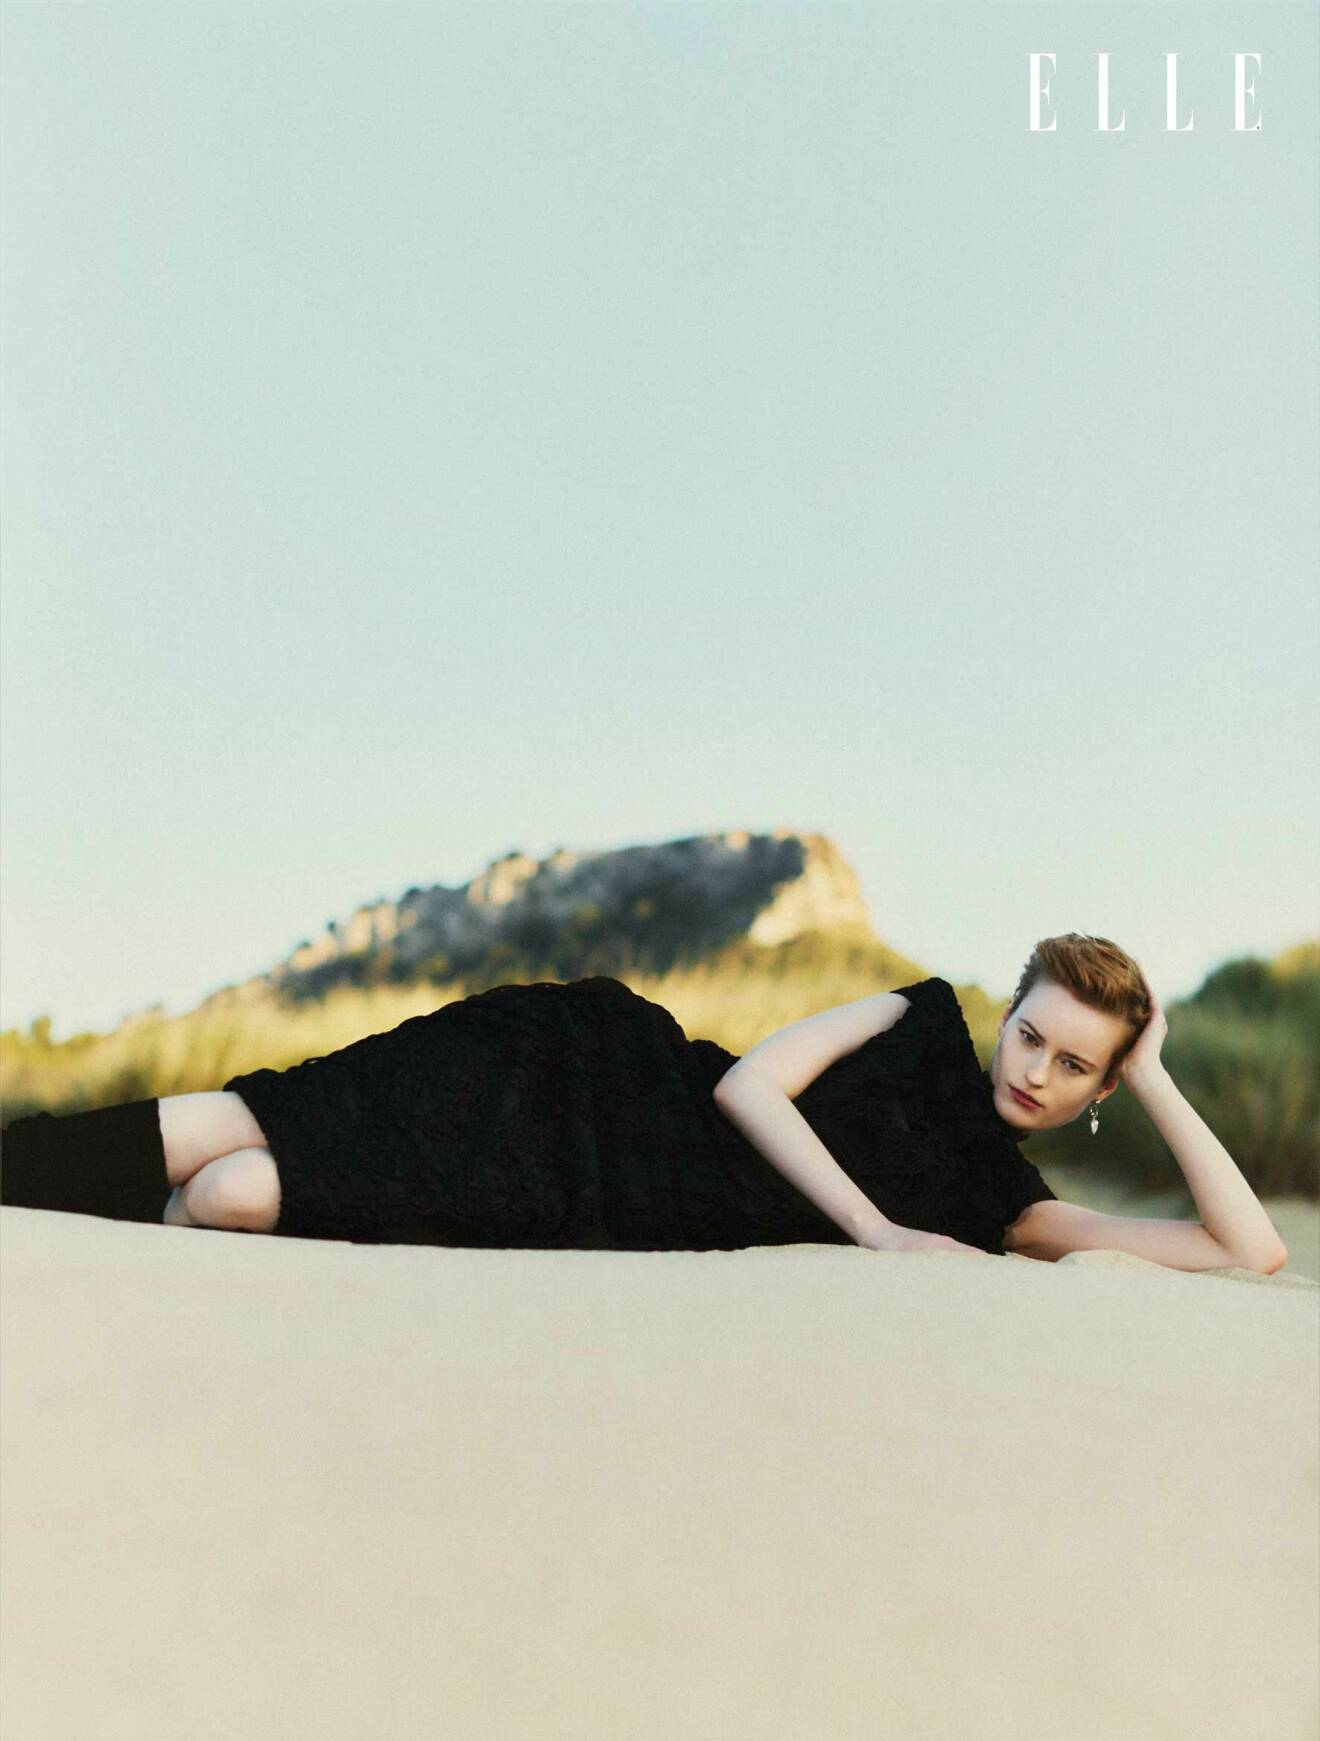 Modellen ligger ner i sanden och har på sig en svart klänning från Dries Van Noten och svarta benvärmare från Katharina Dubbick.